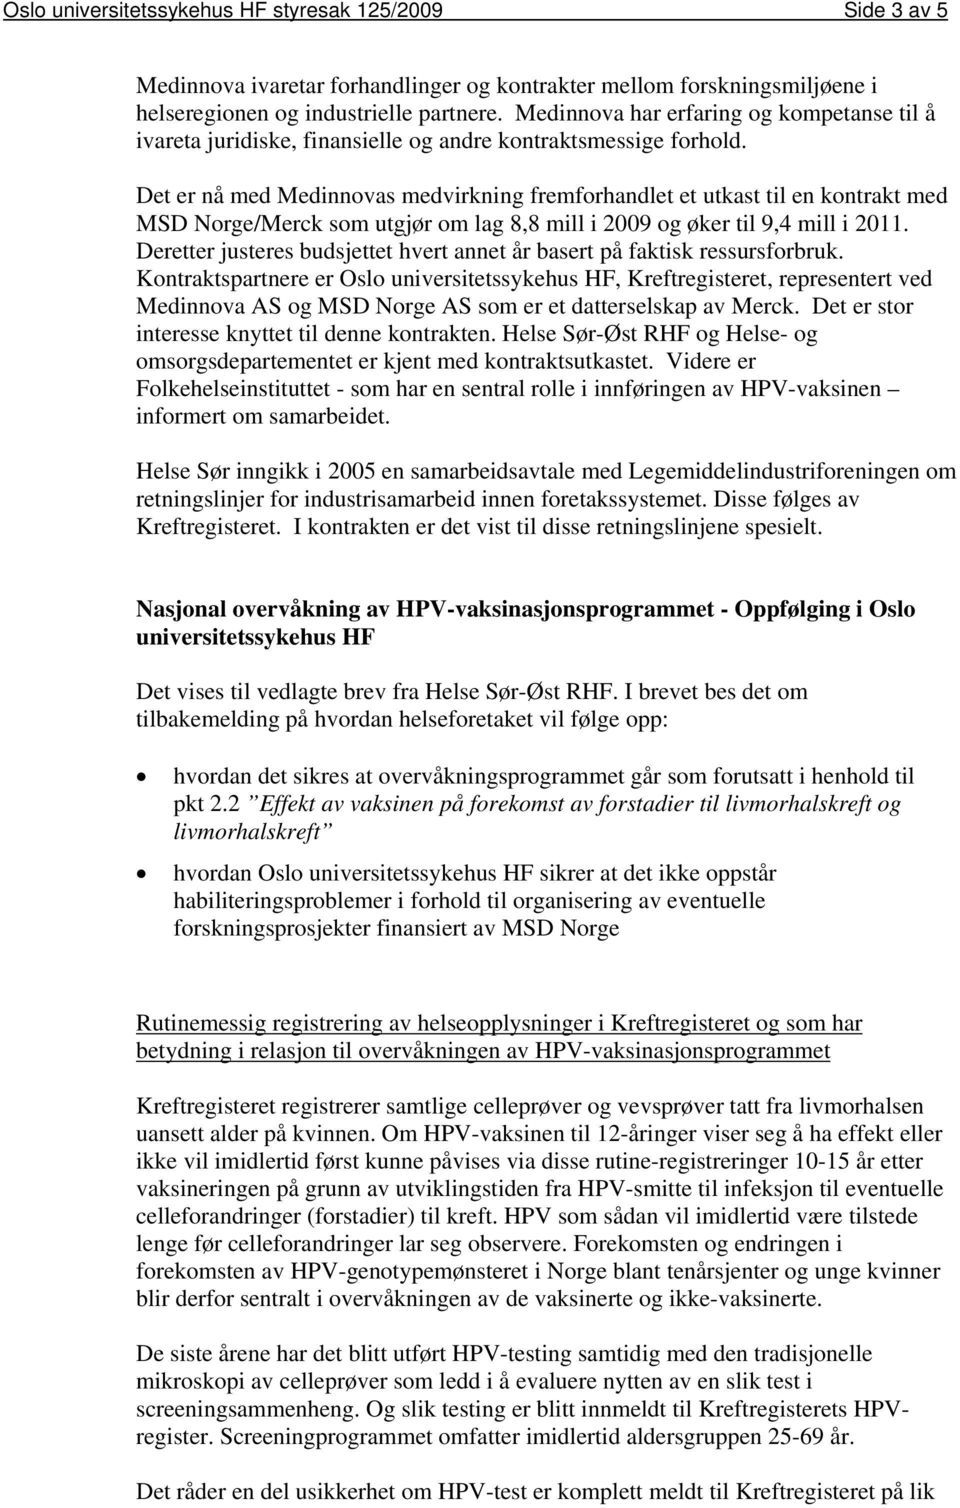 Det er nå med Medinnovas medvirkning fremforhandlet et utkast til en kontrakt med MSD Norge/Merck som utgjør om lag 8,8 mill i 2009 og øker til 9,4 mill i 2011.